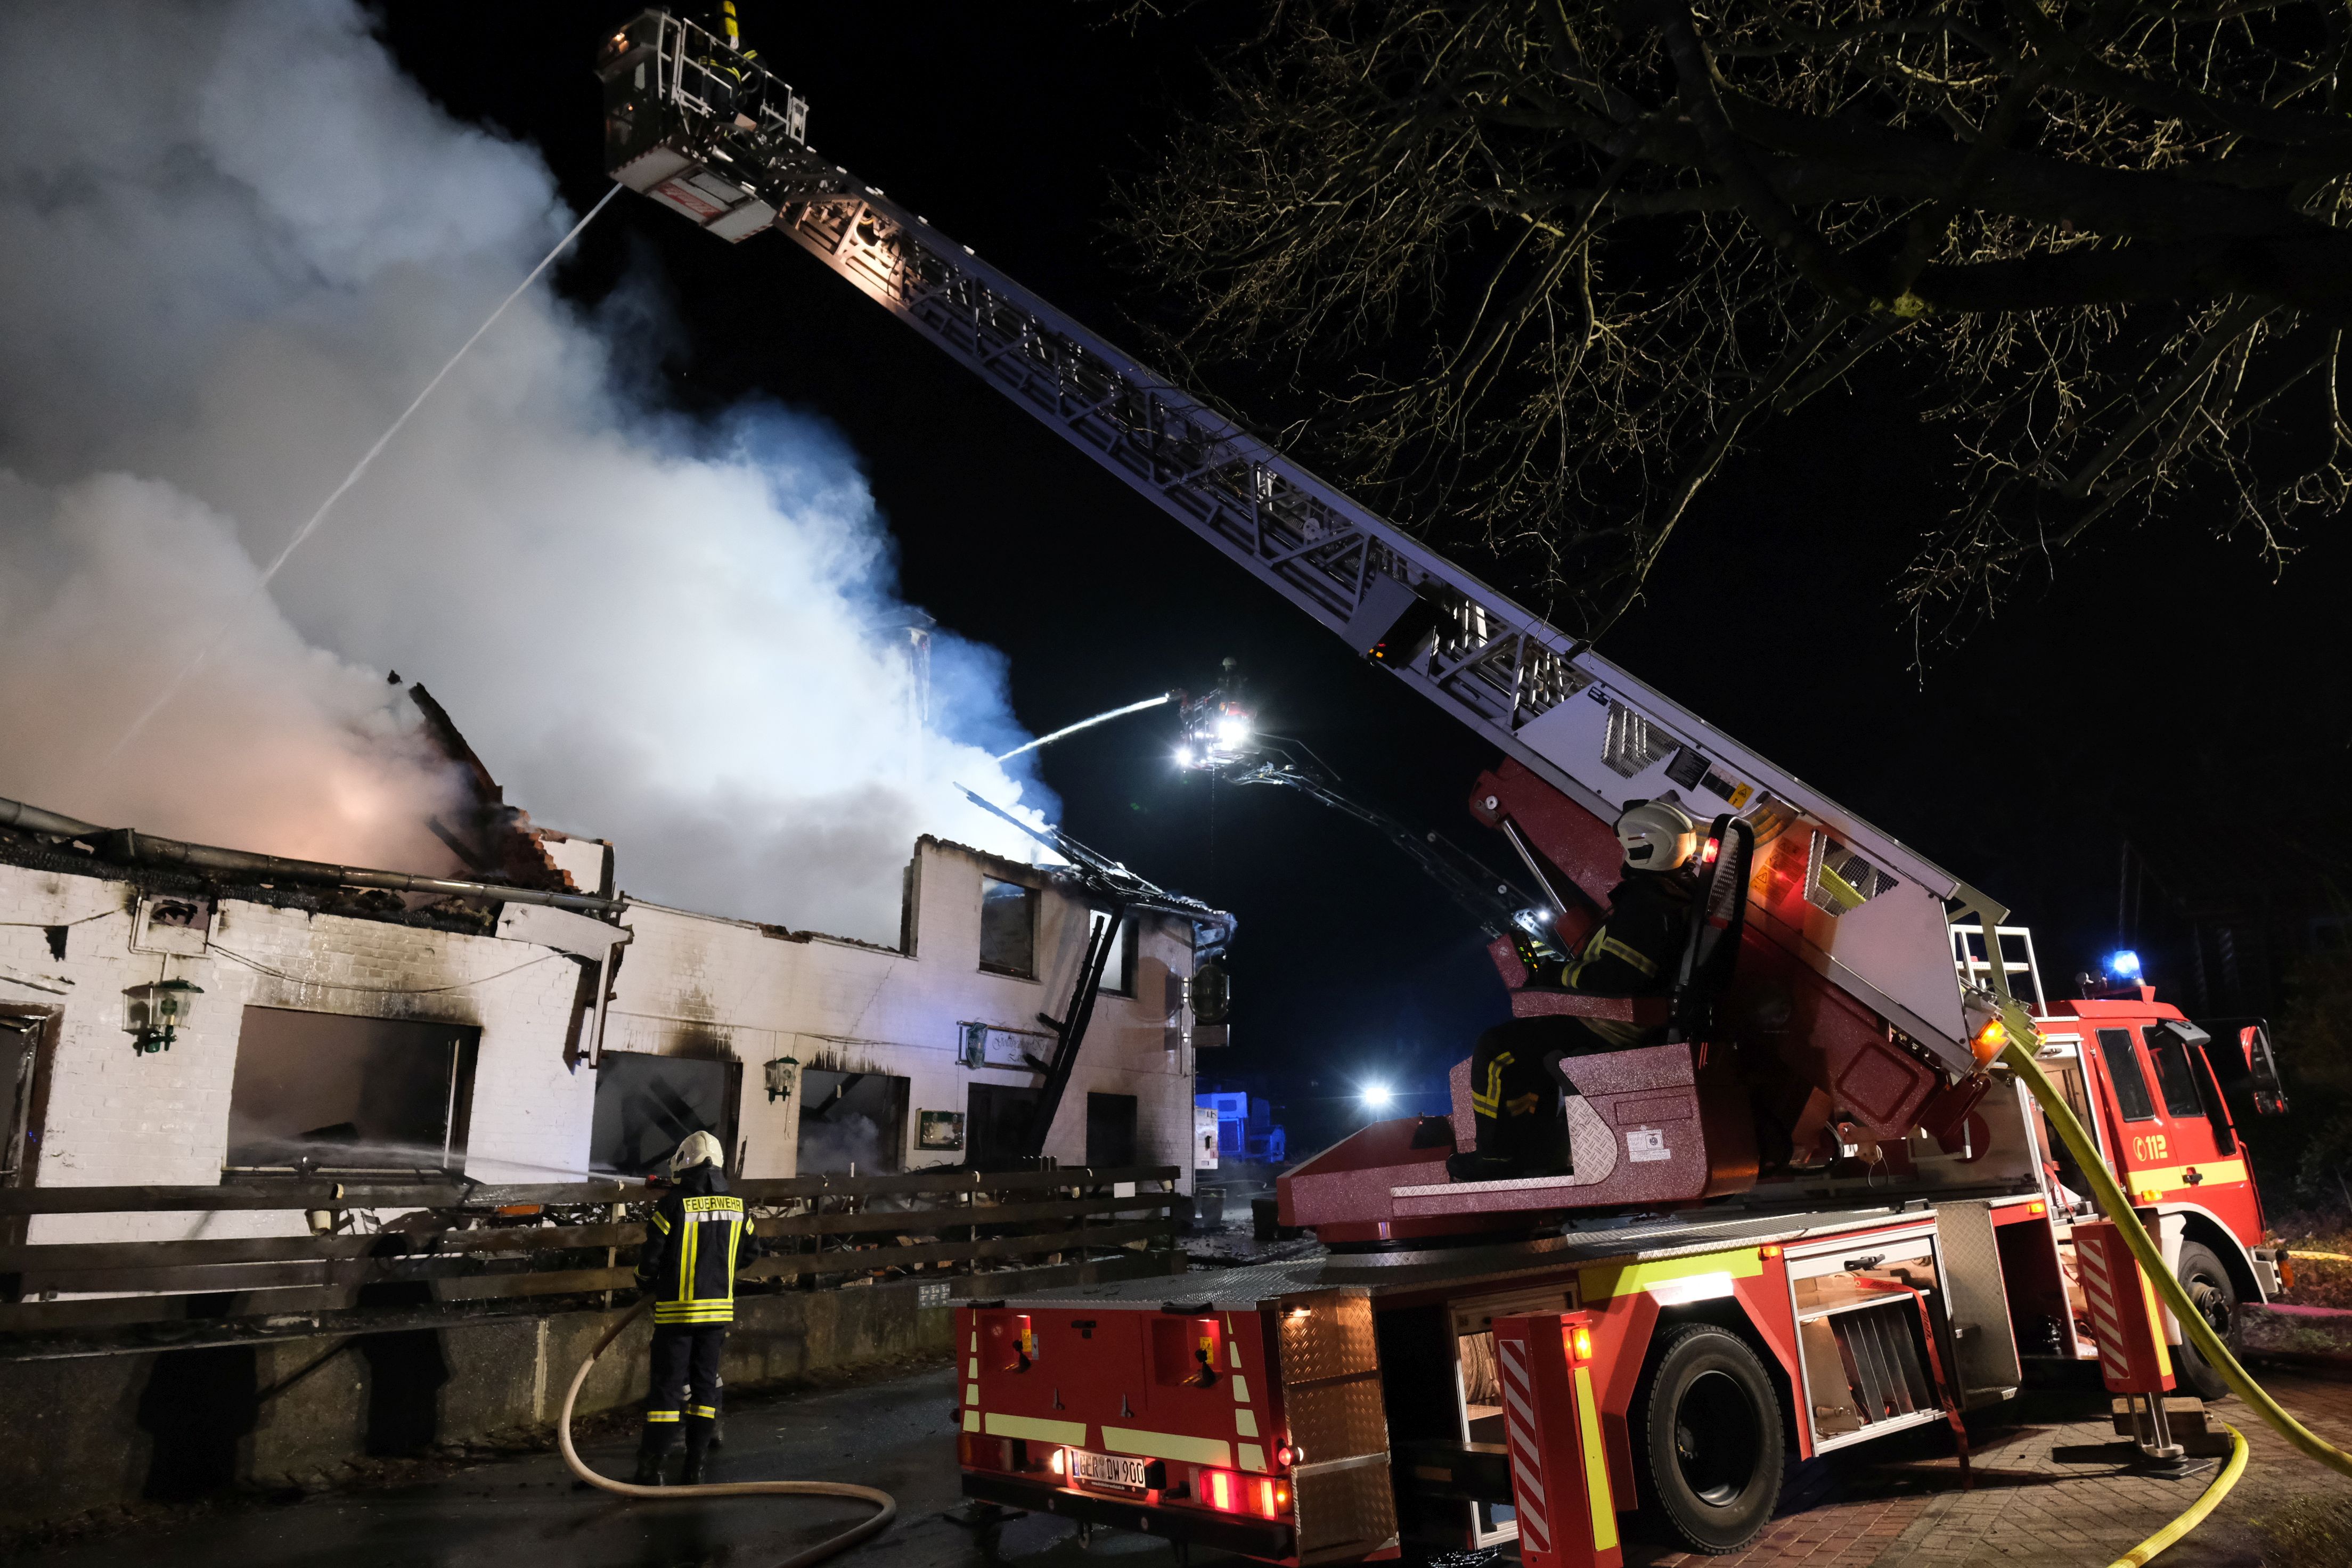 319 Einsätze für Feuerwehr Rinteln - arbeitsreichstes Jahr seit Jahrzehnten